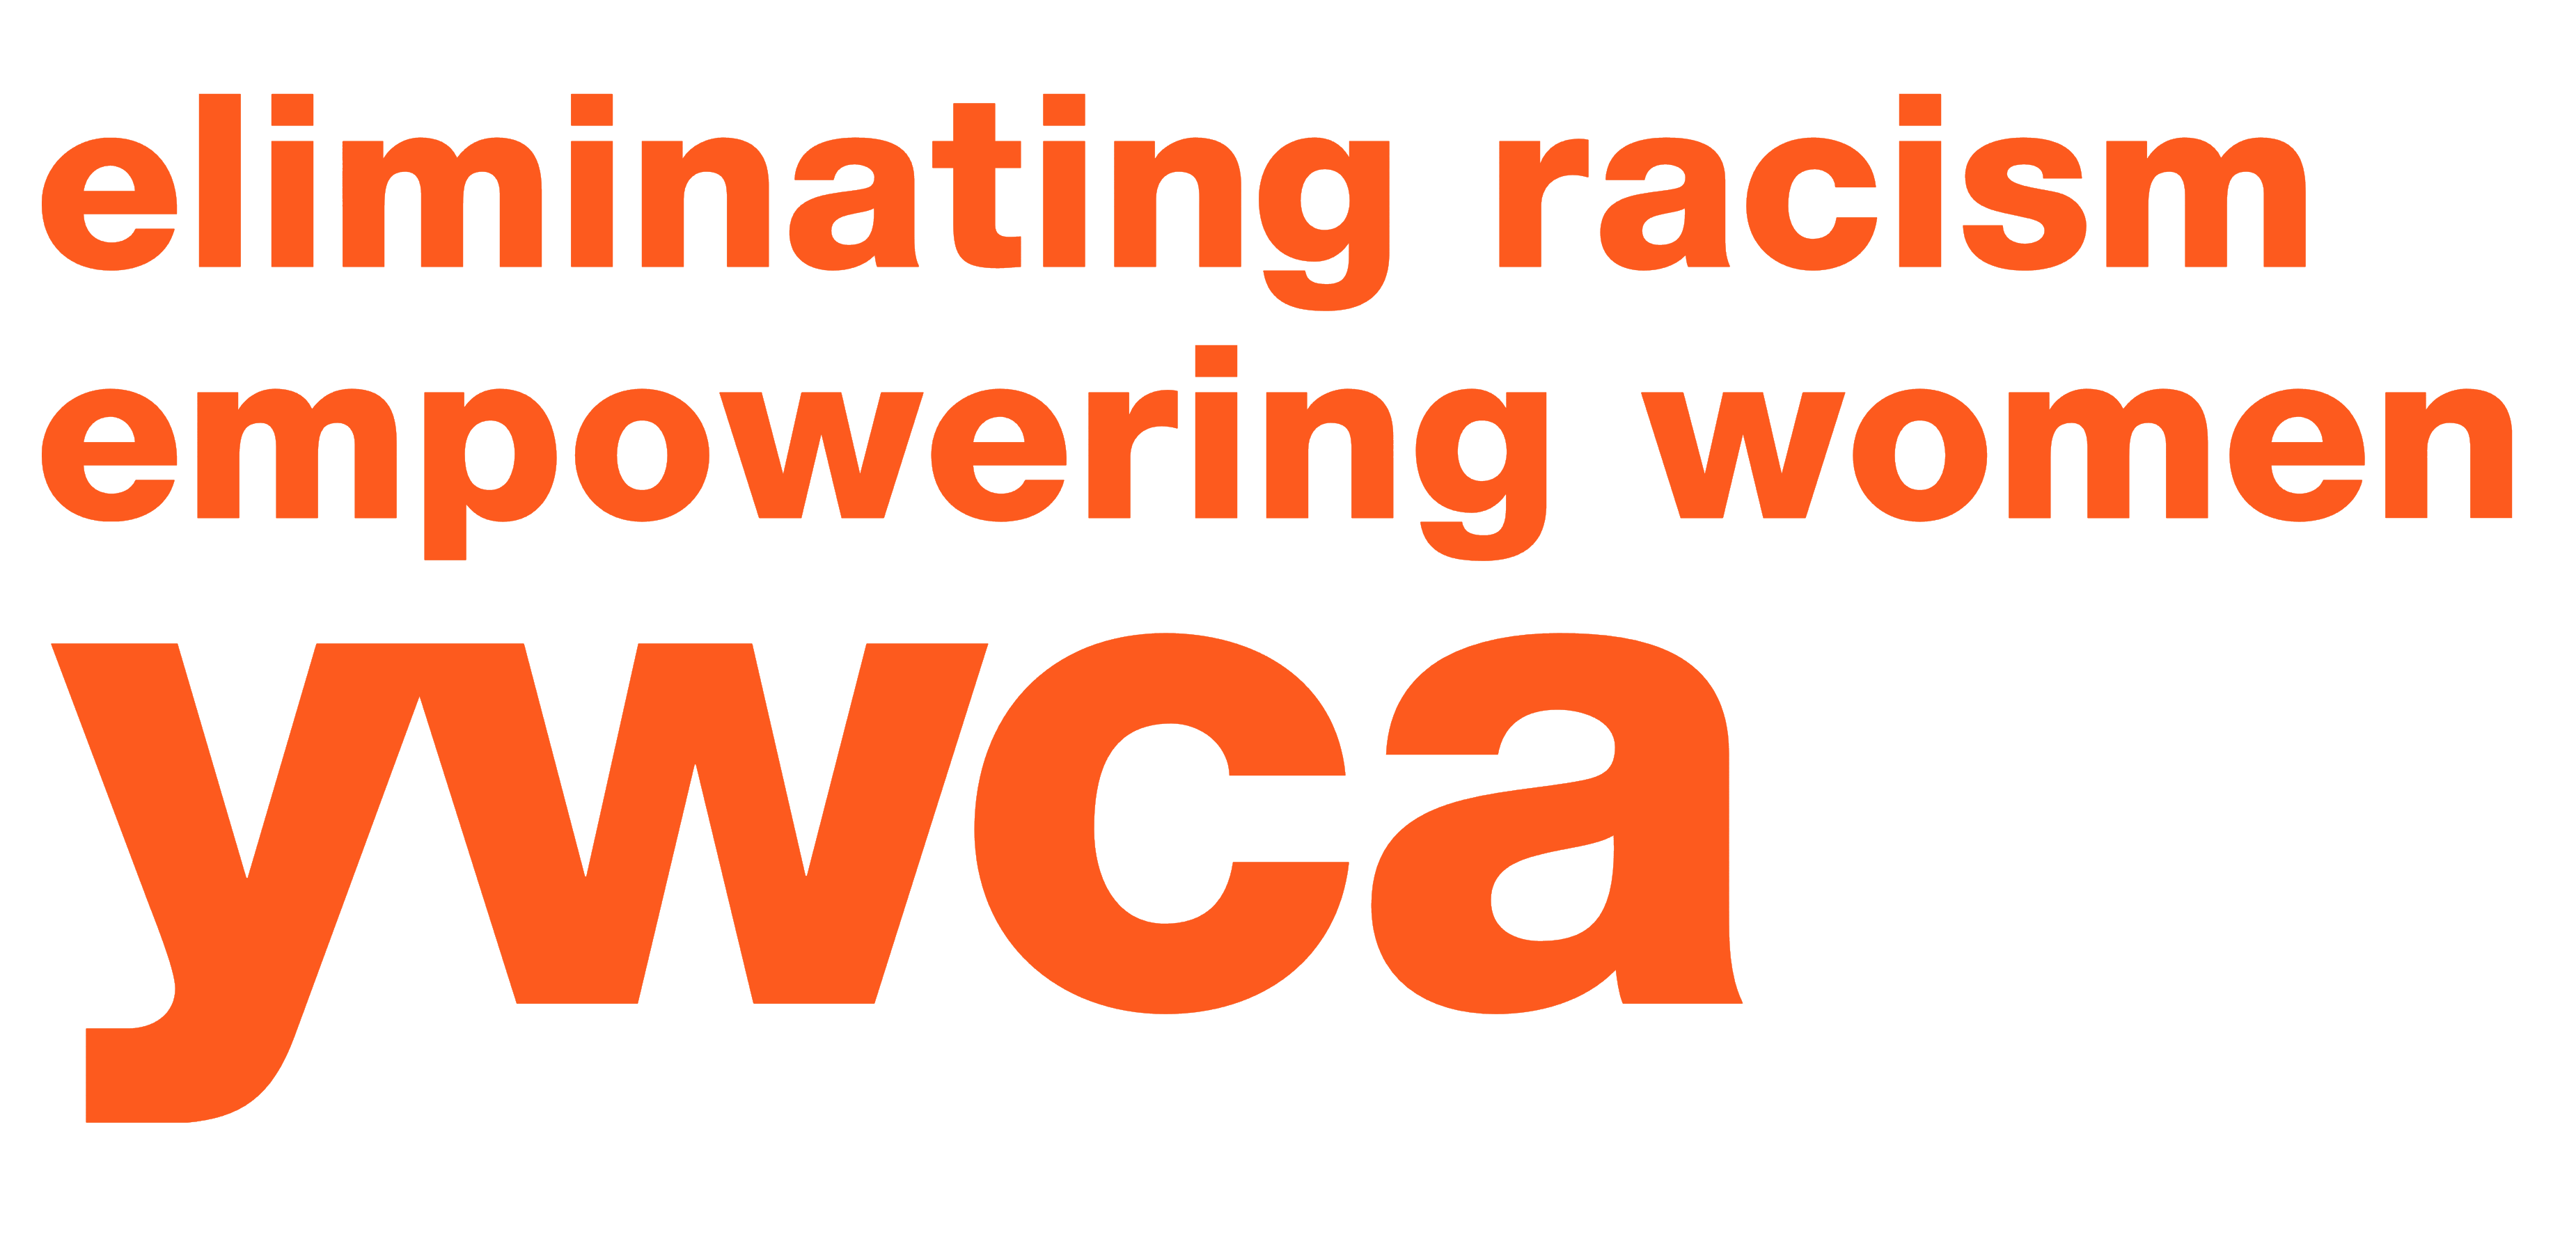 YWCA logo, logotype